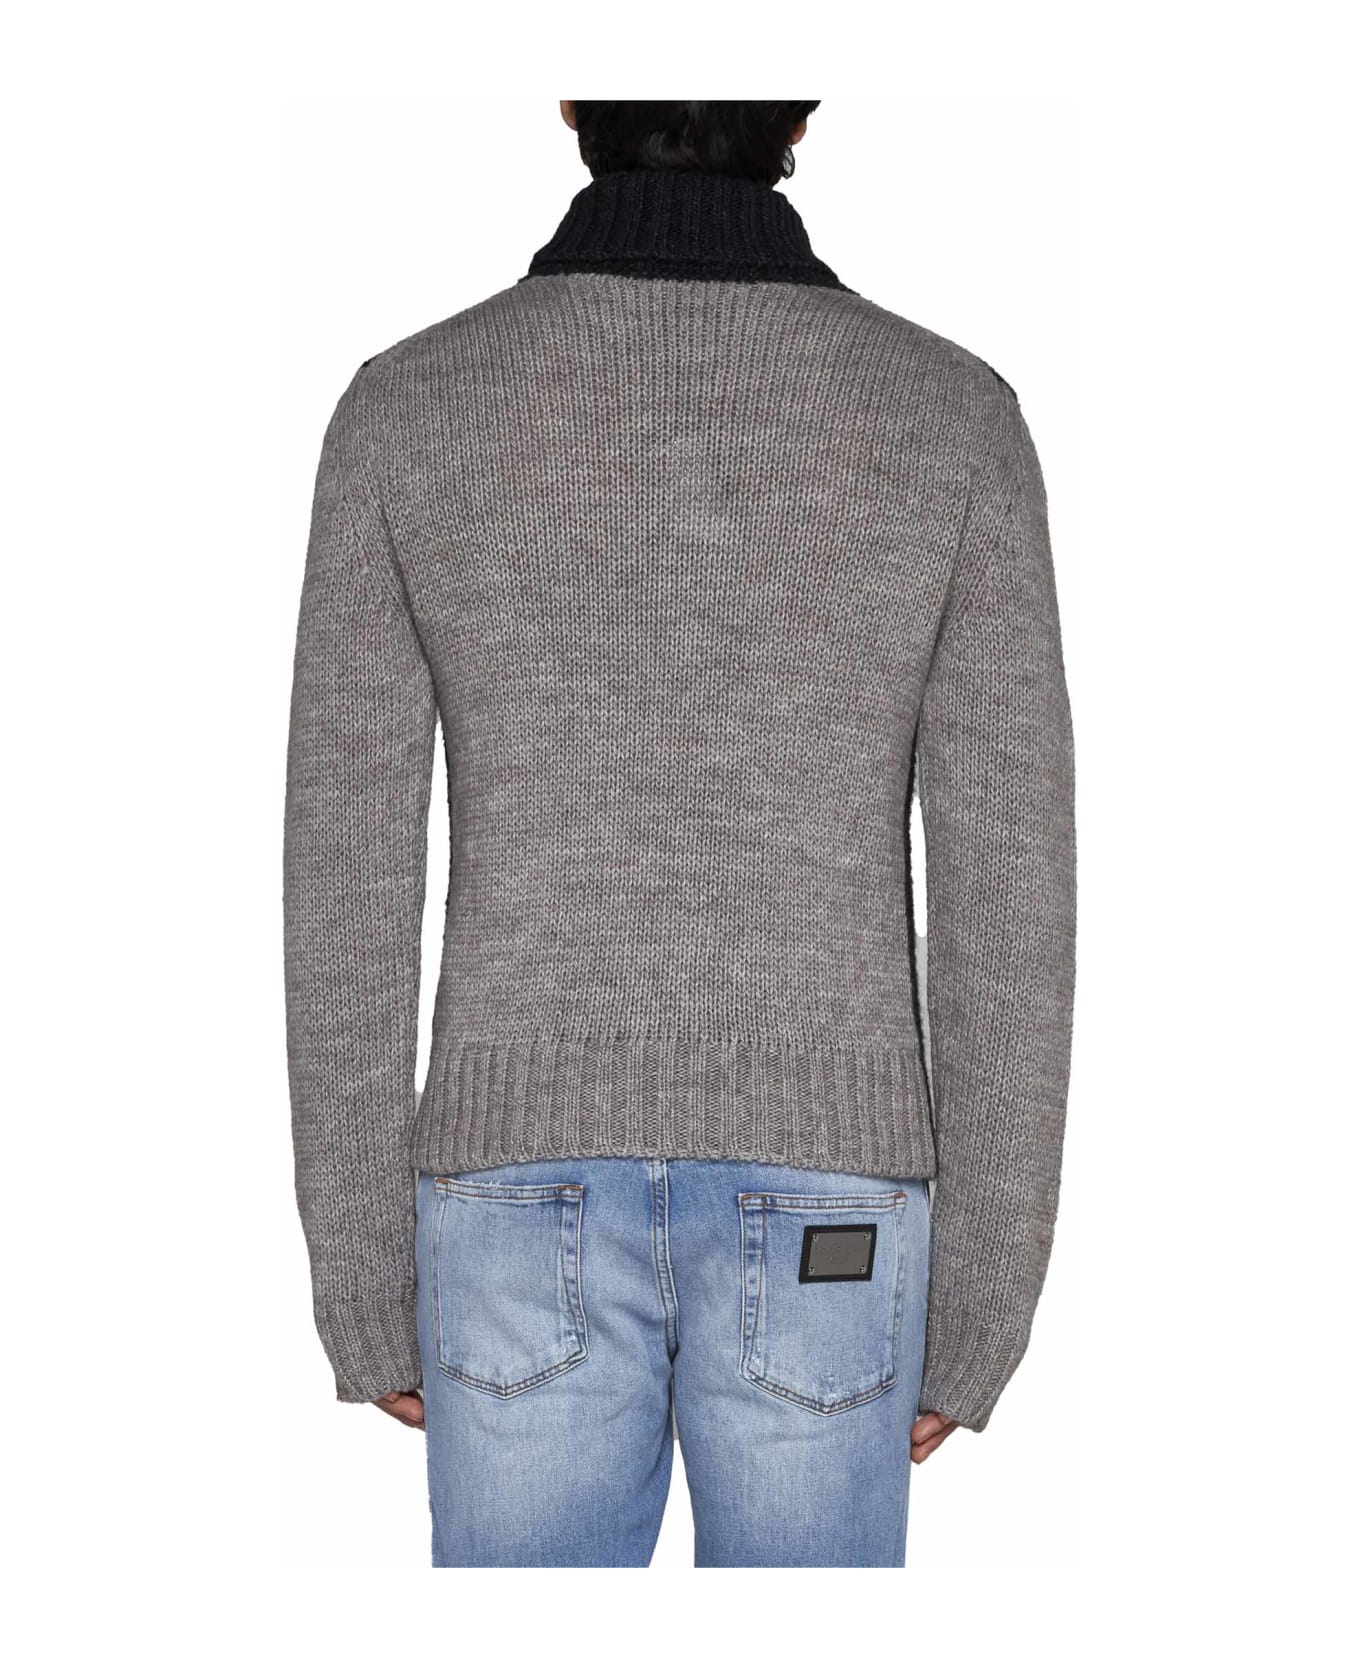 Dolce & Gabbana Sweater - grey